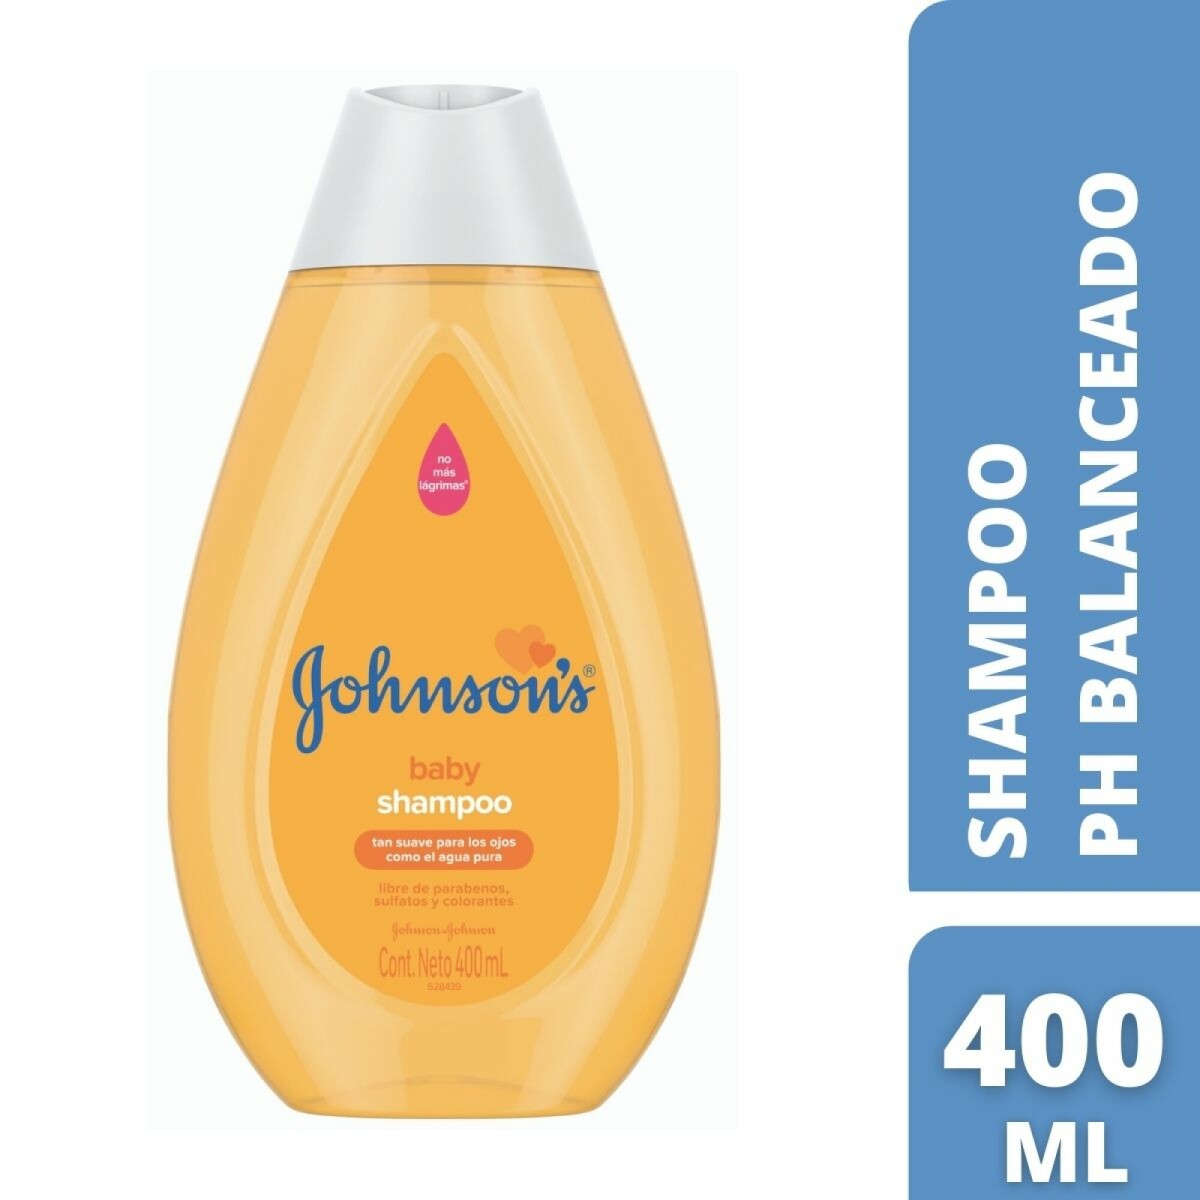 Shampoo clásico Johnsons 400ml 